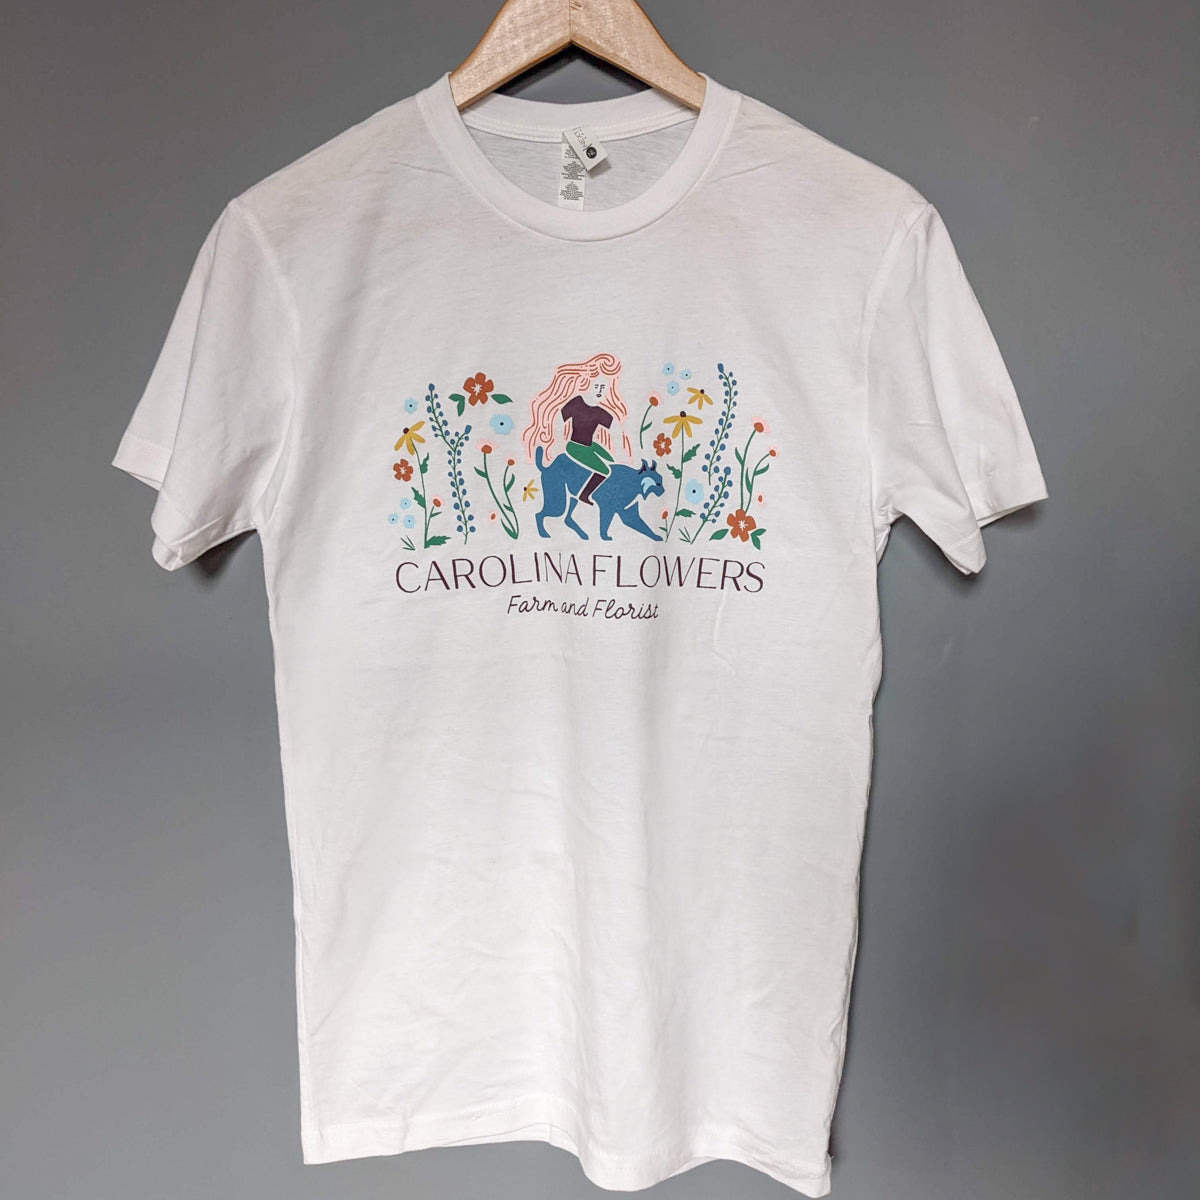 Unisex White T-Shirt with Carolina Flowers Logo